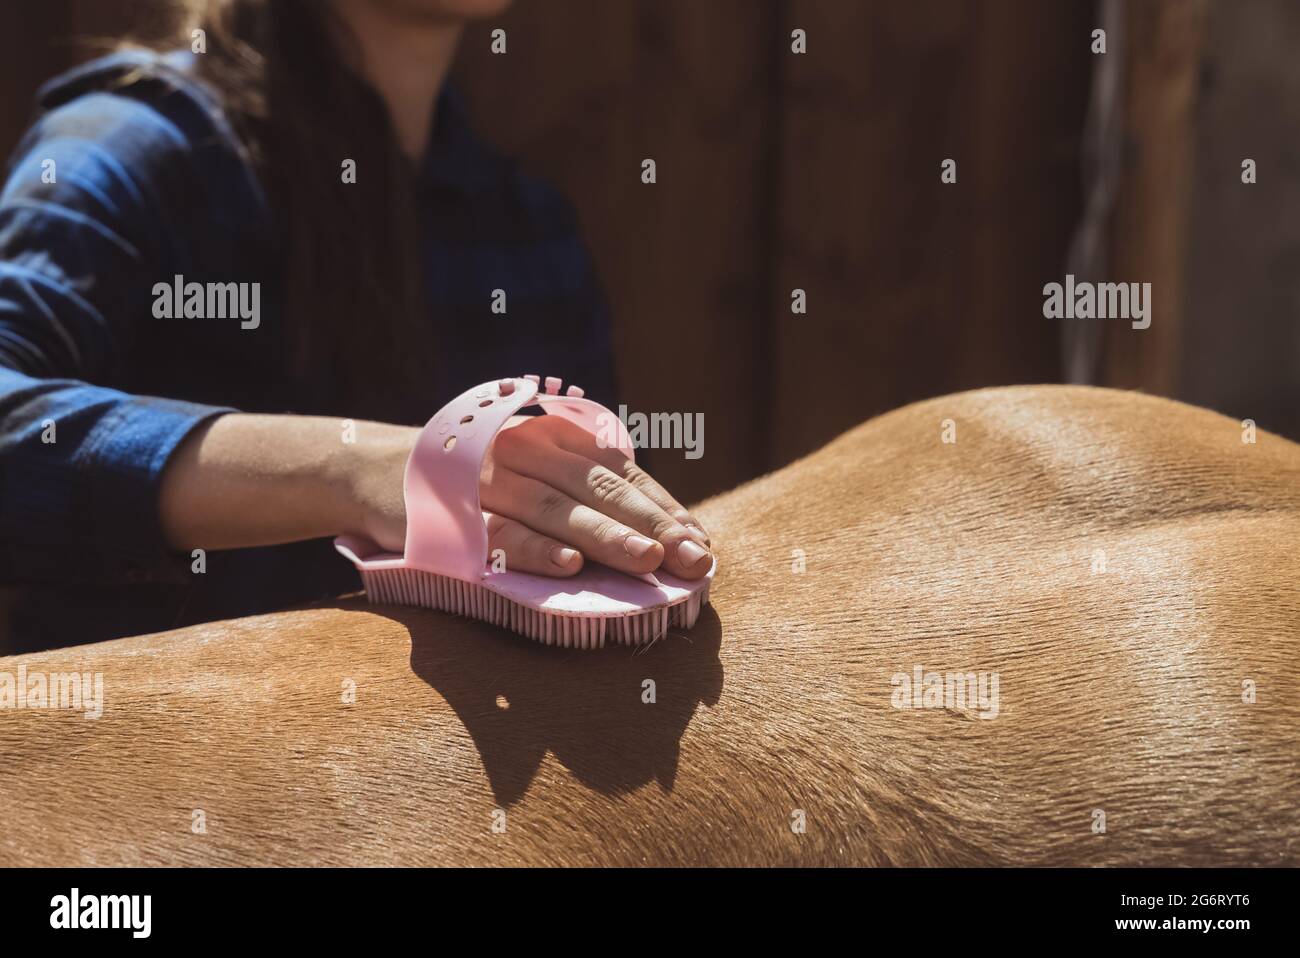 Weibliche Pferdebesitzerin, die das glänzende Pferdekleid eines Palomino-Pferdes putzt. Während des Tages den Staub vom Pferd abbürsten. Sonnenlicht trifft auf das Pferd. Reinigung und Pflege von Pferden. Stockfoto